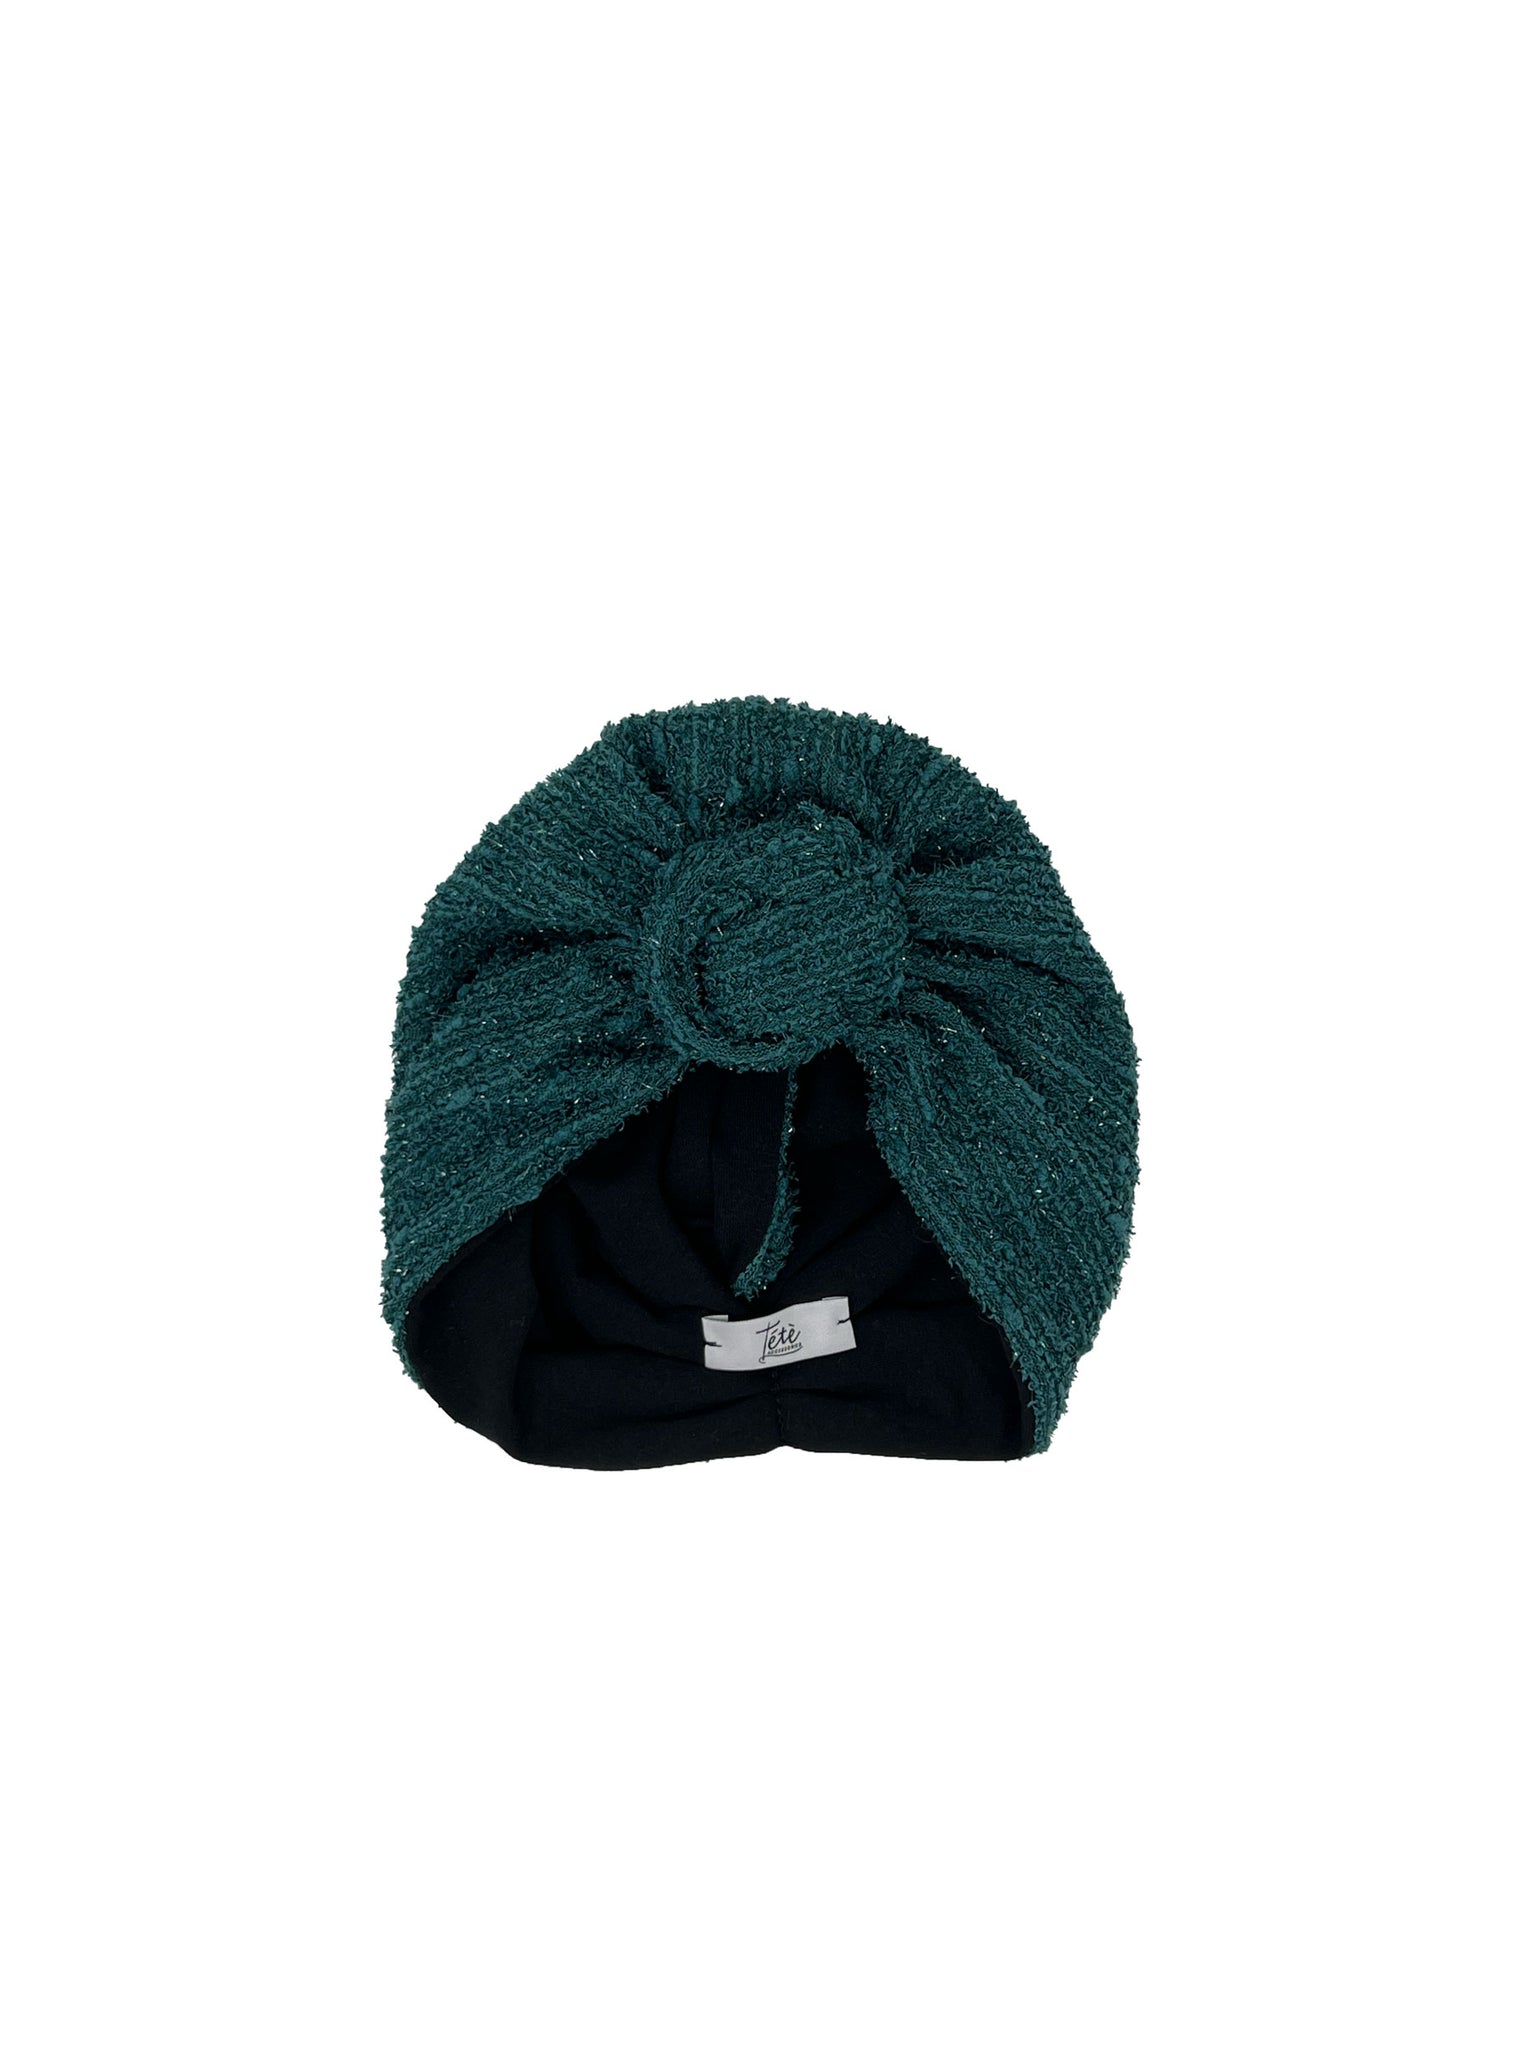 Octanium green devoré velvet and lurex turban for baby girl